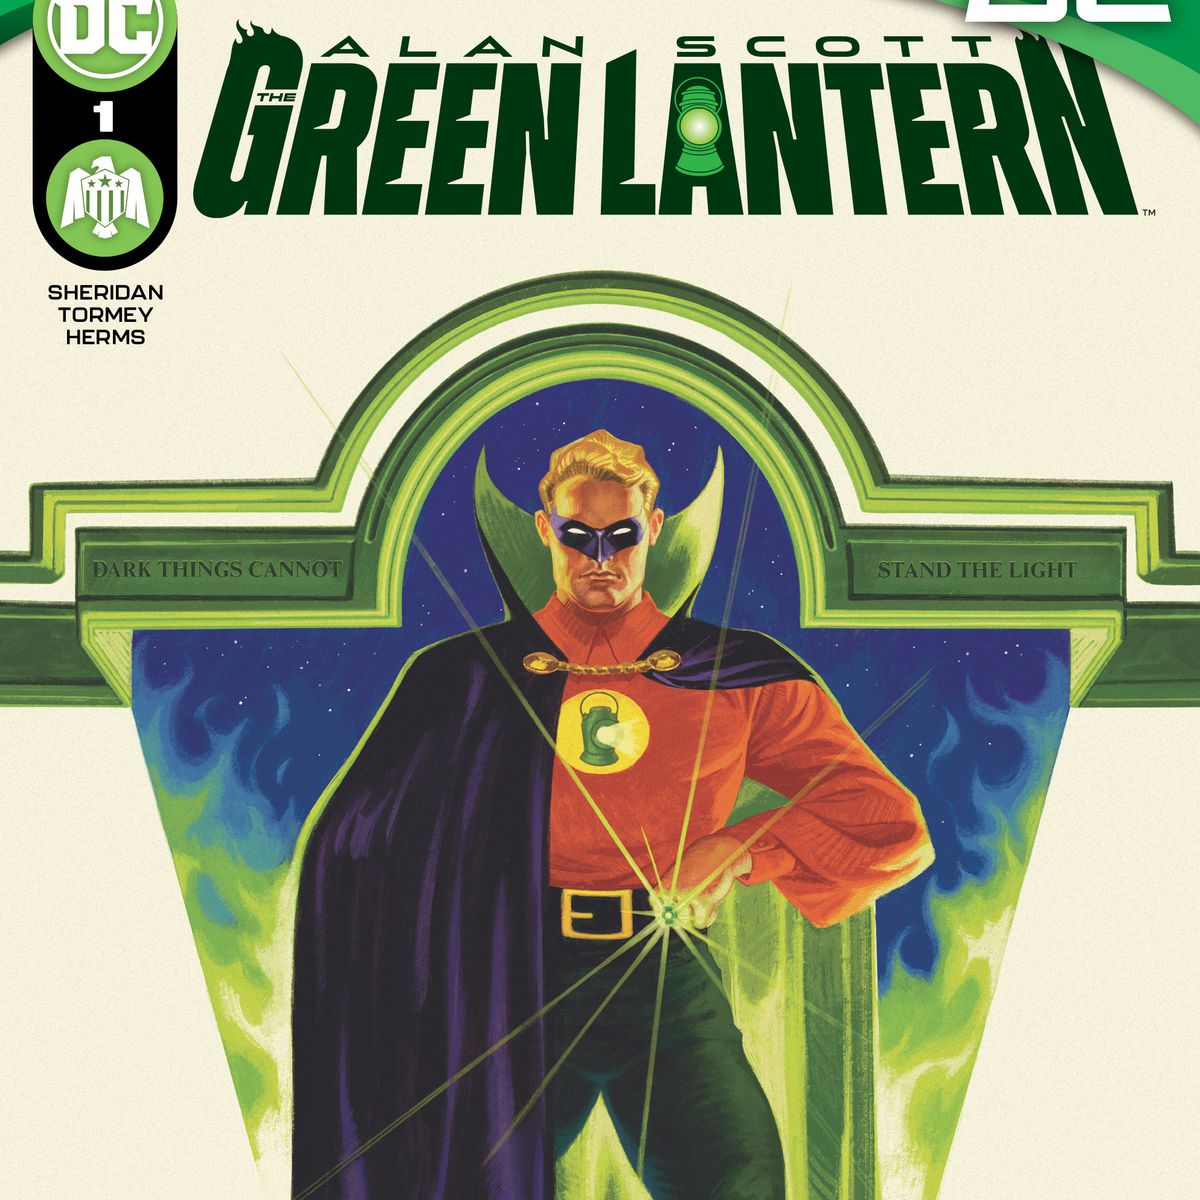 Alan Scott/Green Lantern står i sin kostym med sin långa cape, höga krage och lysande ring, framför en bakgrund av grön låga på omslaget till Alan Scott: The Green Lantern #1. 